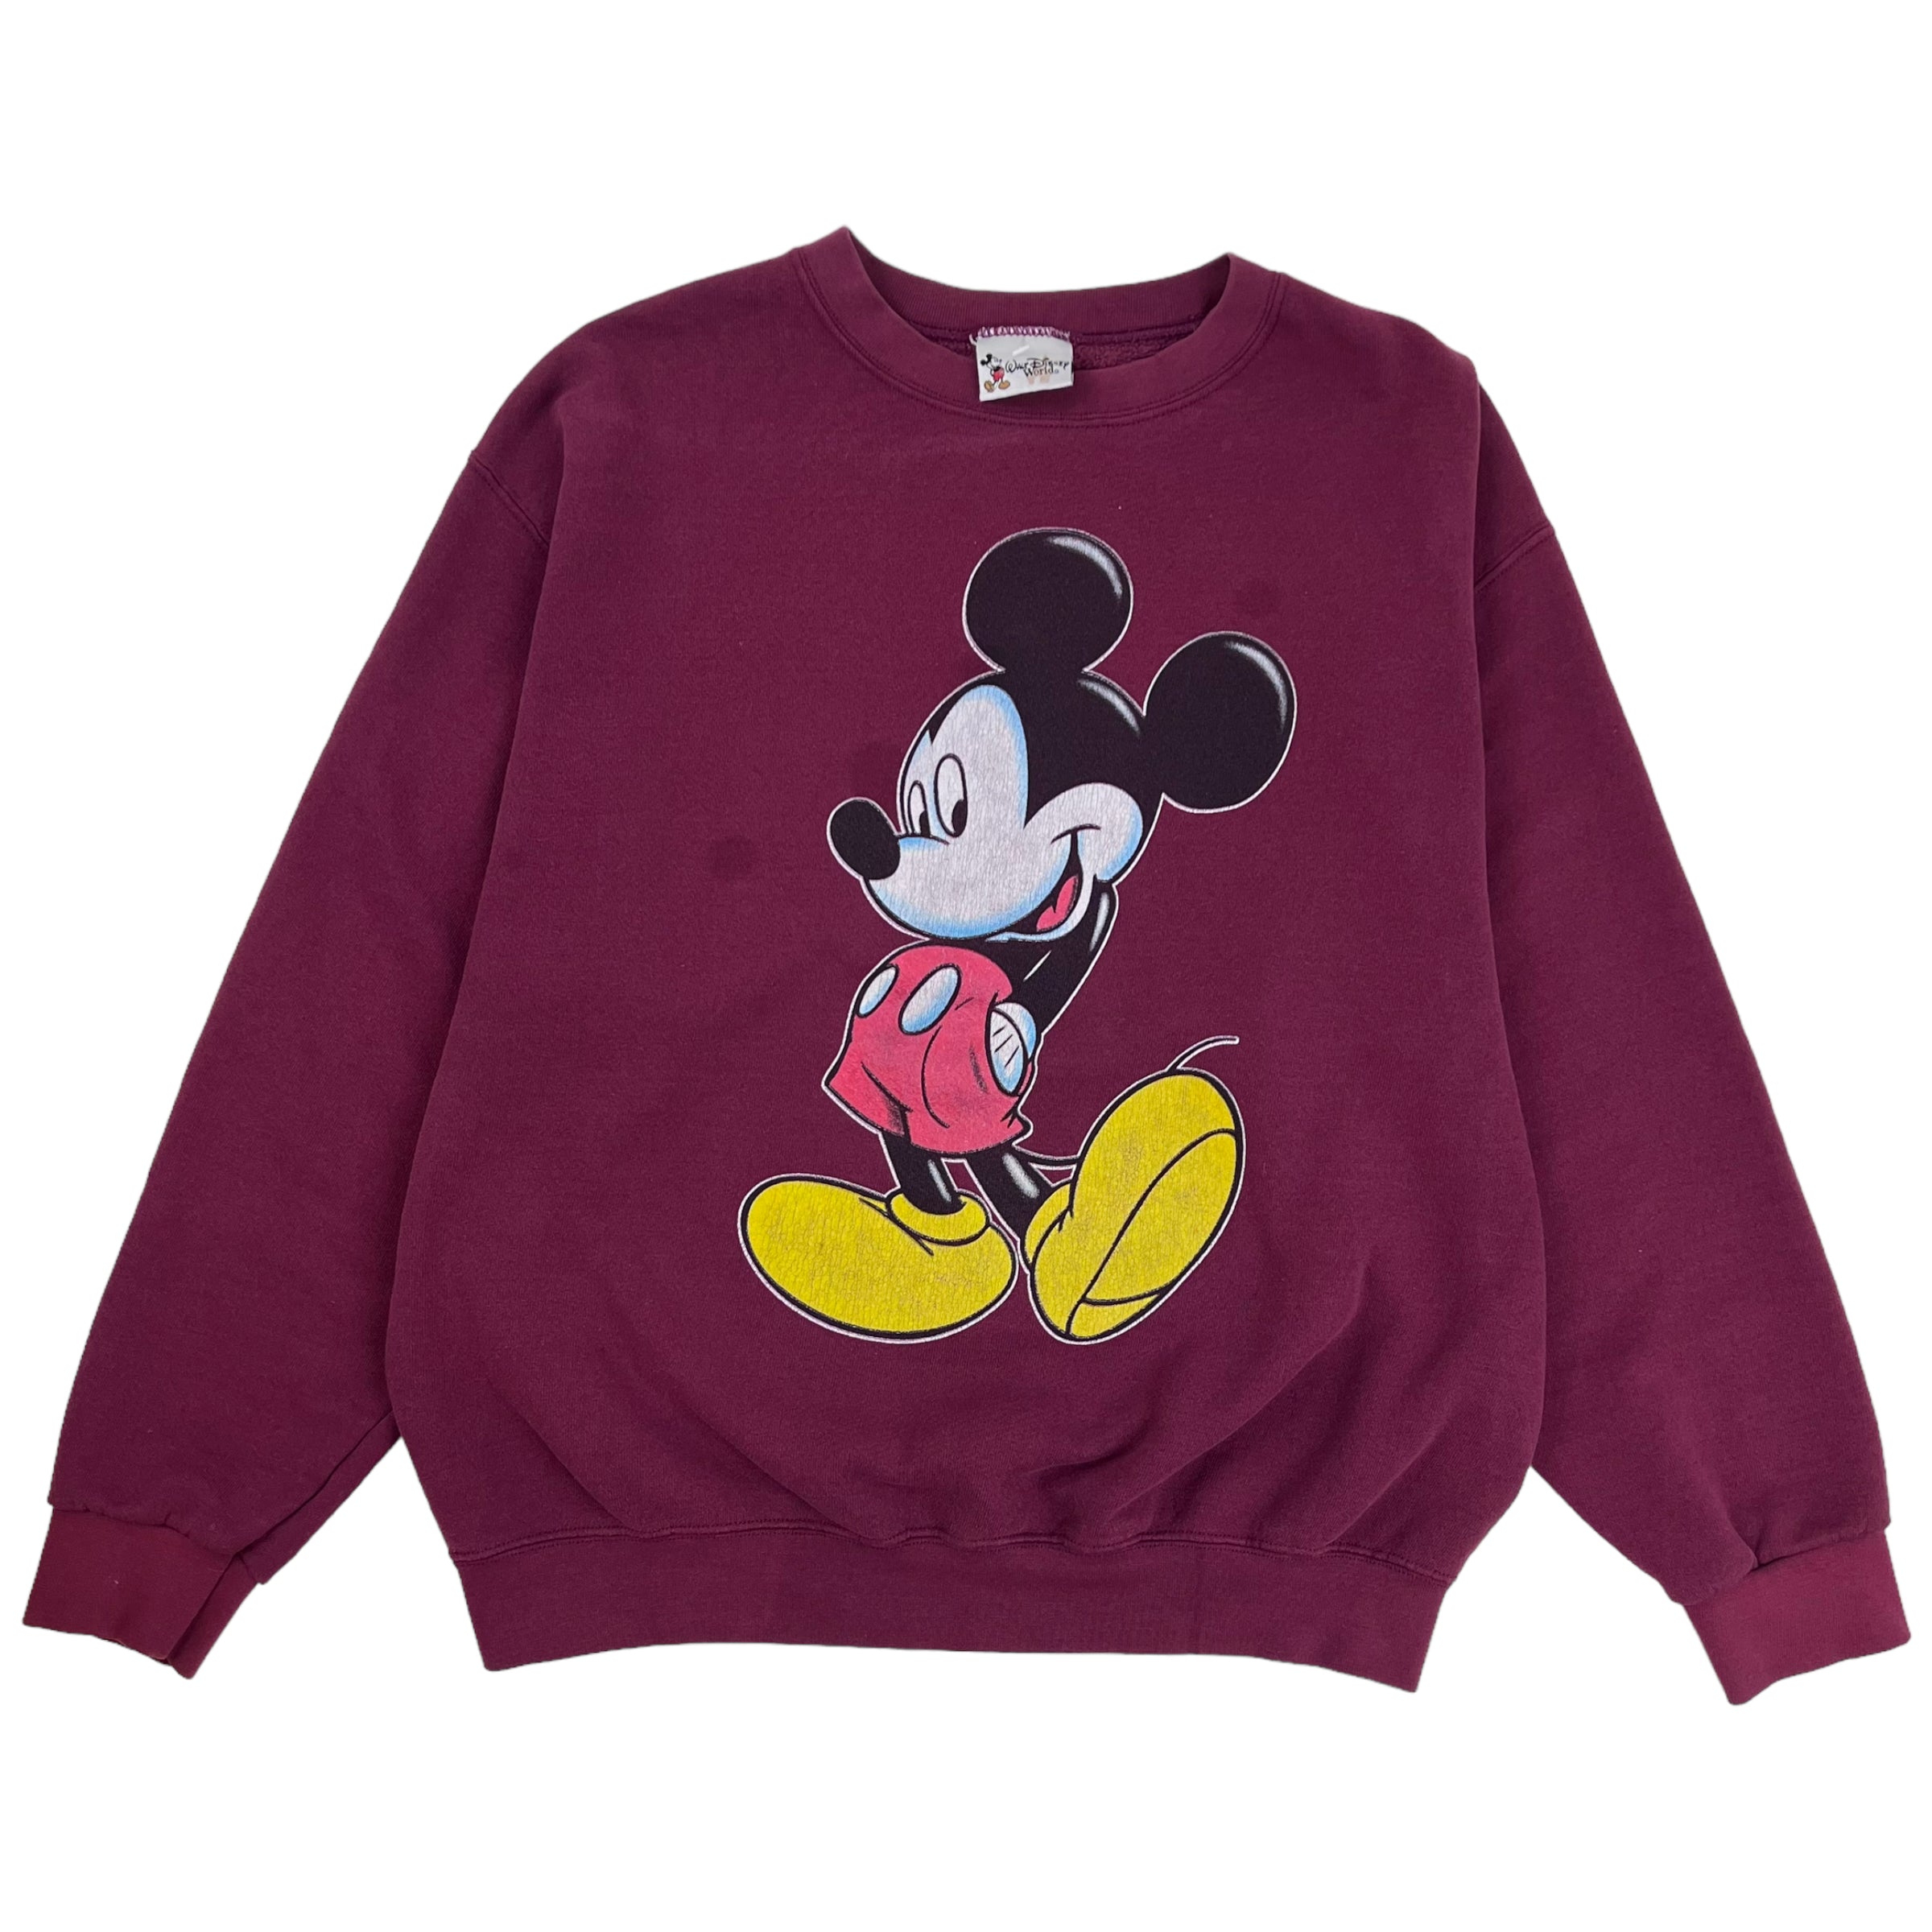 Vintage Disney Mickey Mouse Crewneck Maroon